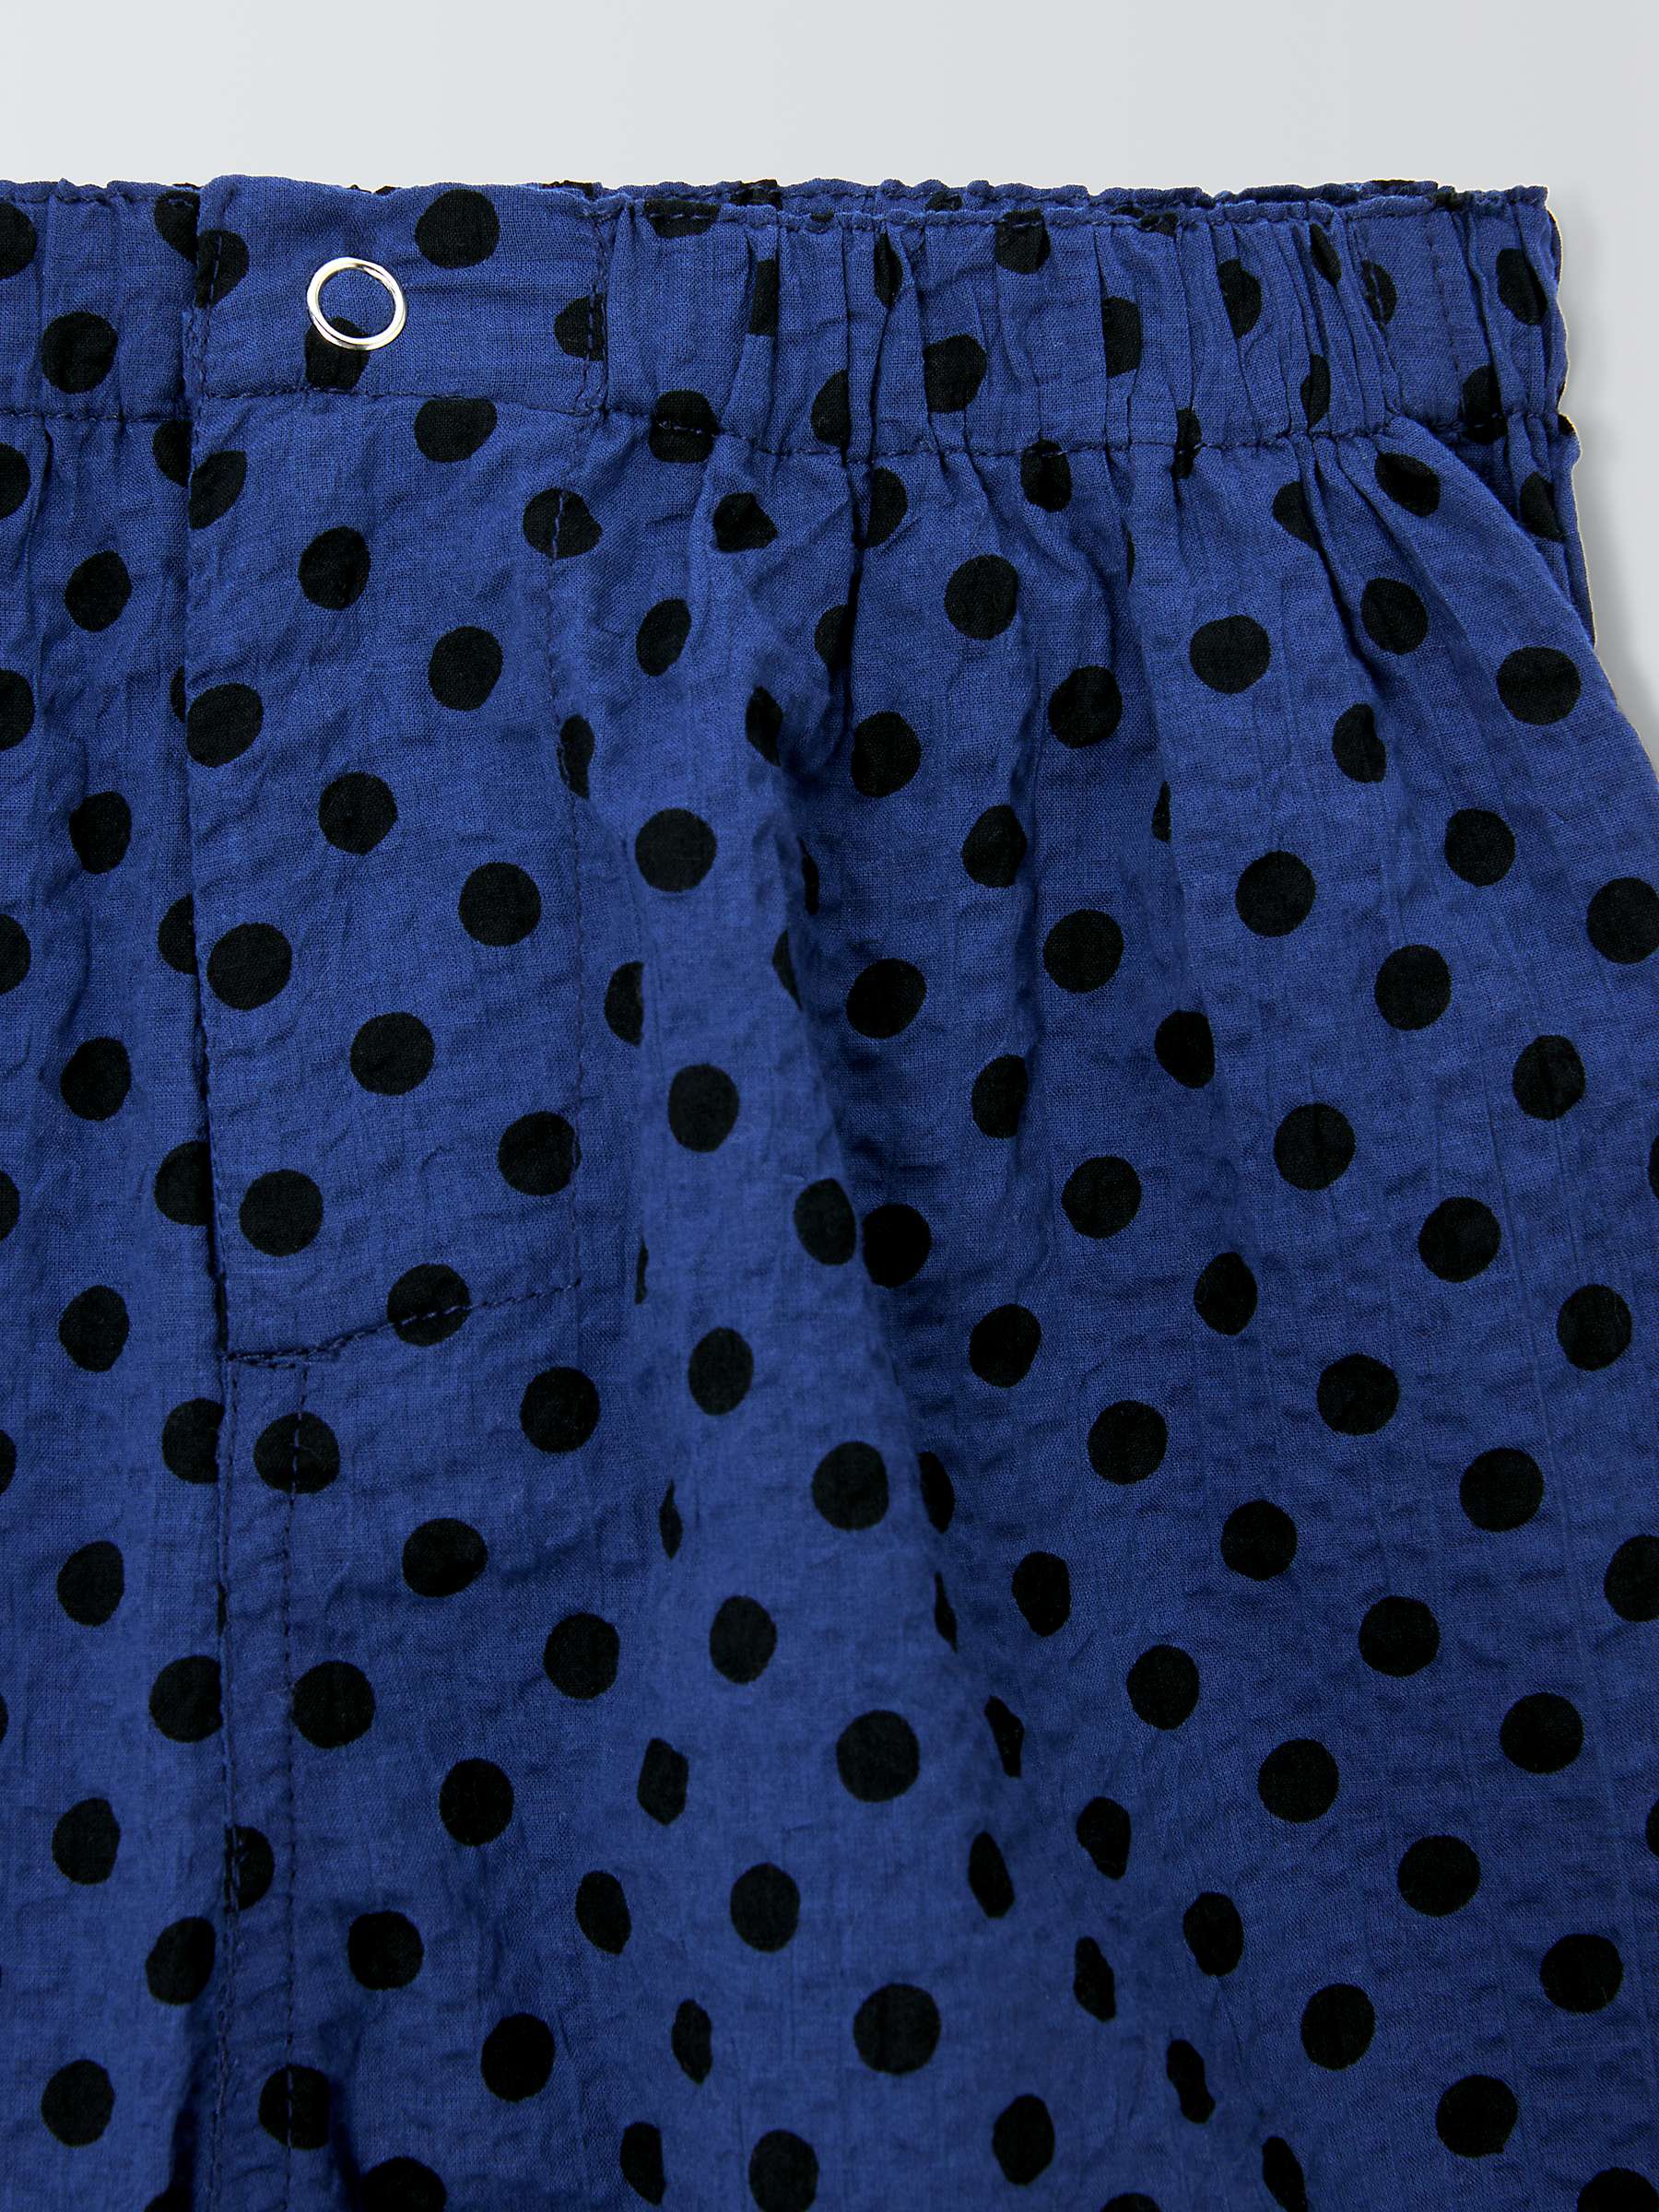 Buy Caramel Kids' Apium Polka Dot Shorts, Navy Online at johnlewis.com